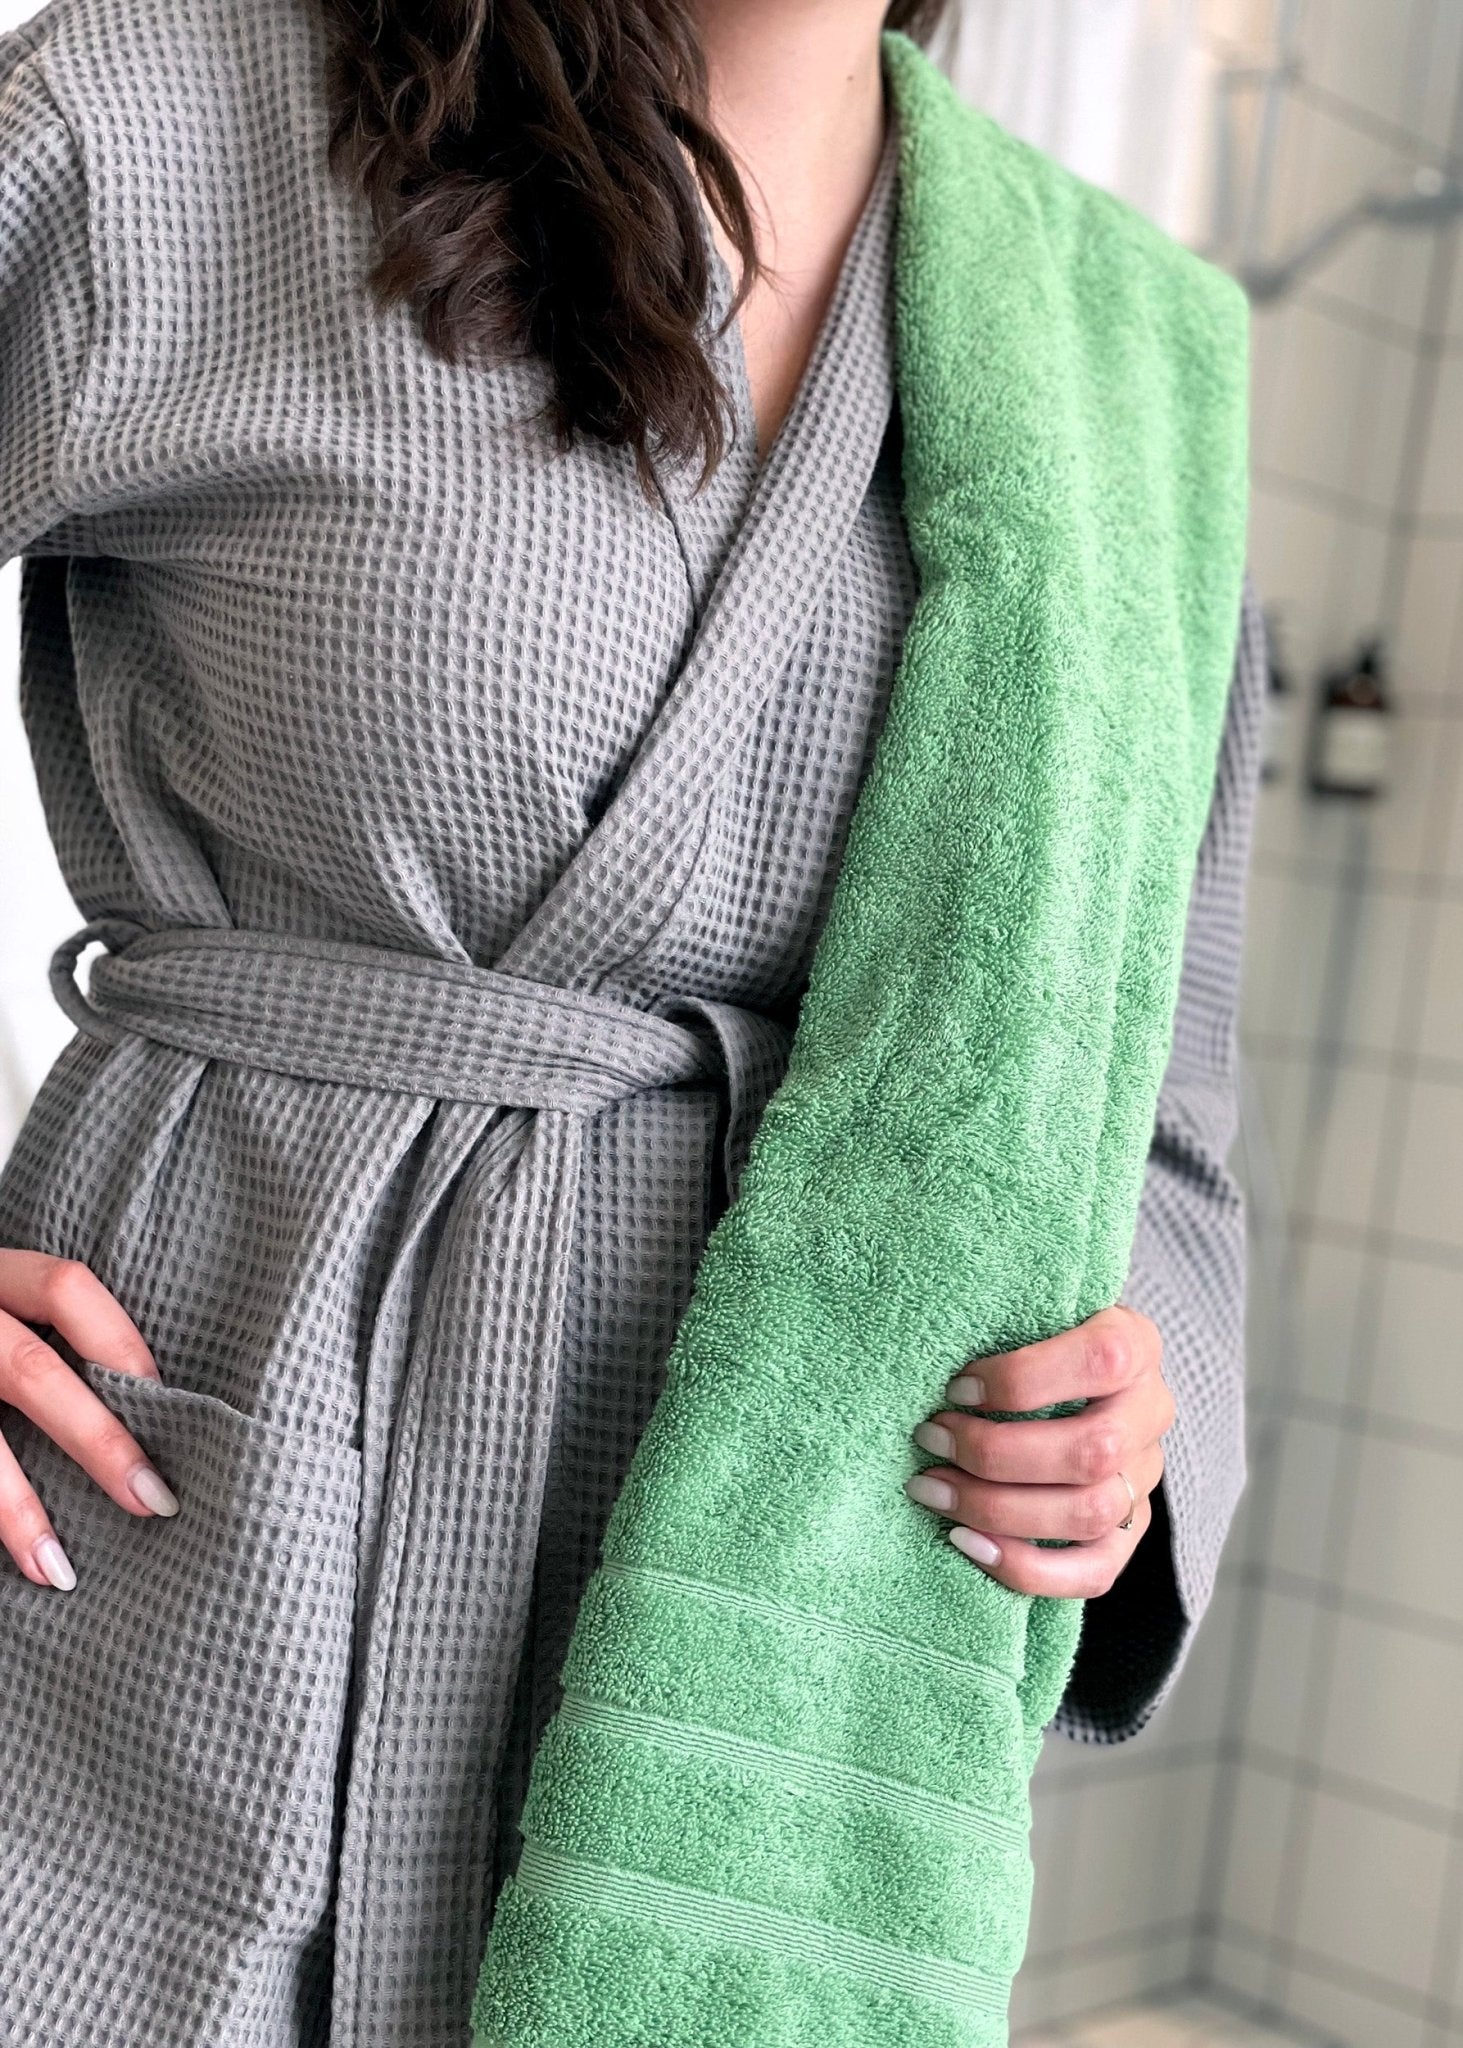 Kvinde står med et grønt håndklæde over skulderen. Hun er selv iklædt en grå badekåbe. 